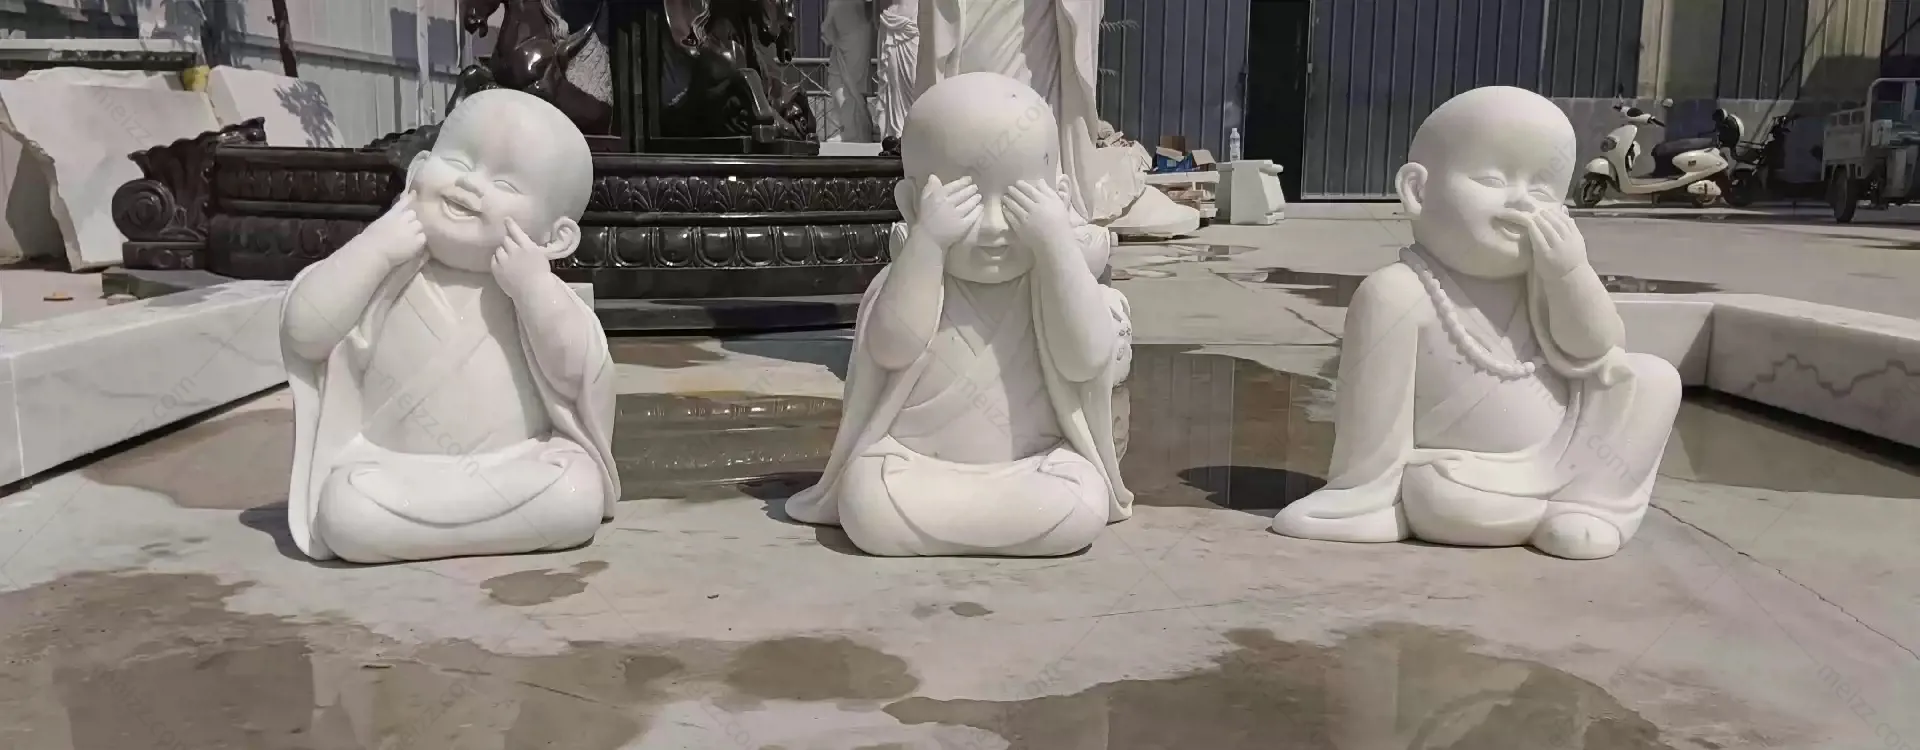 little monk sculpture